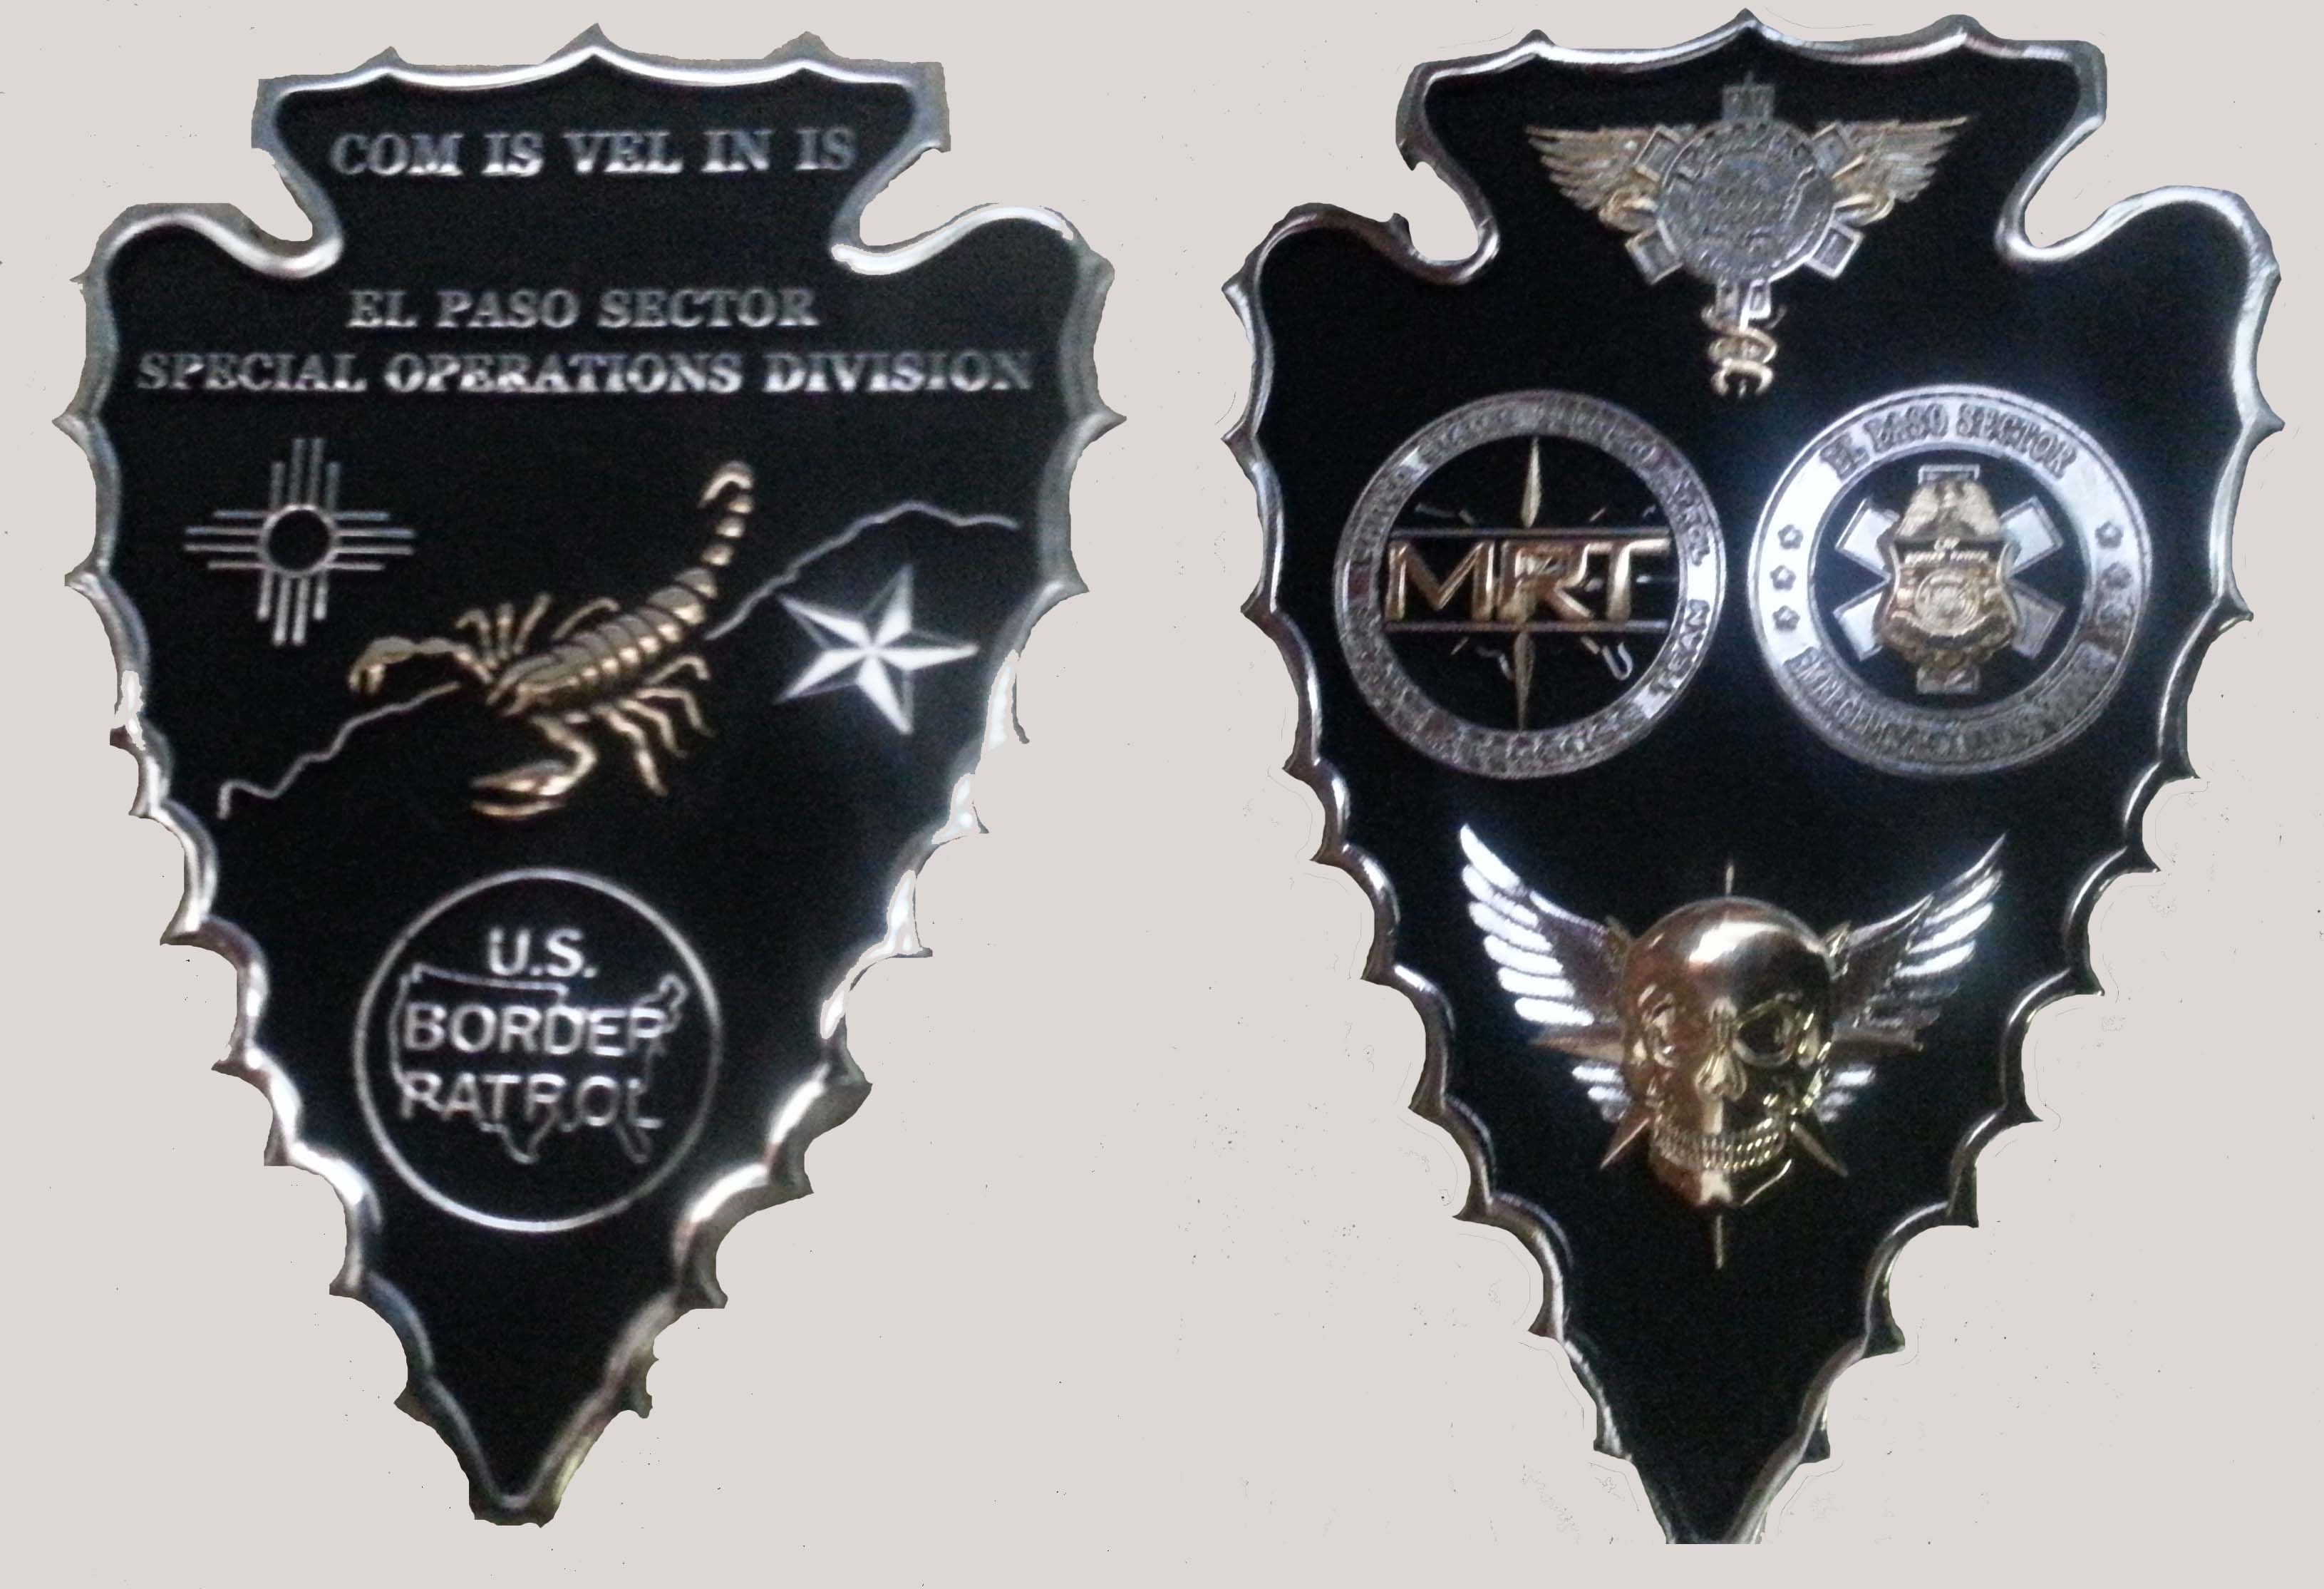 El Paso Sector Special Operations Detachment